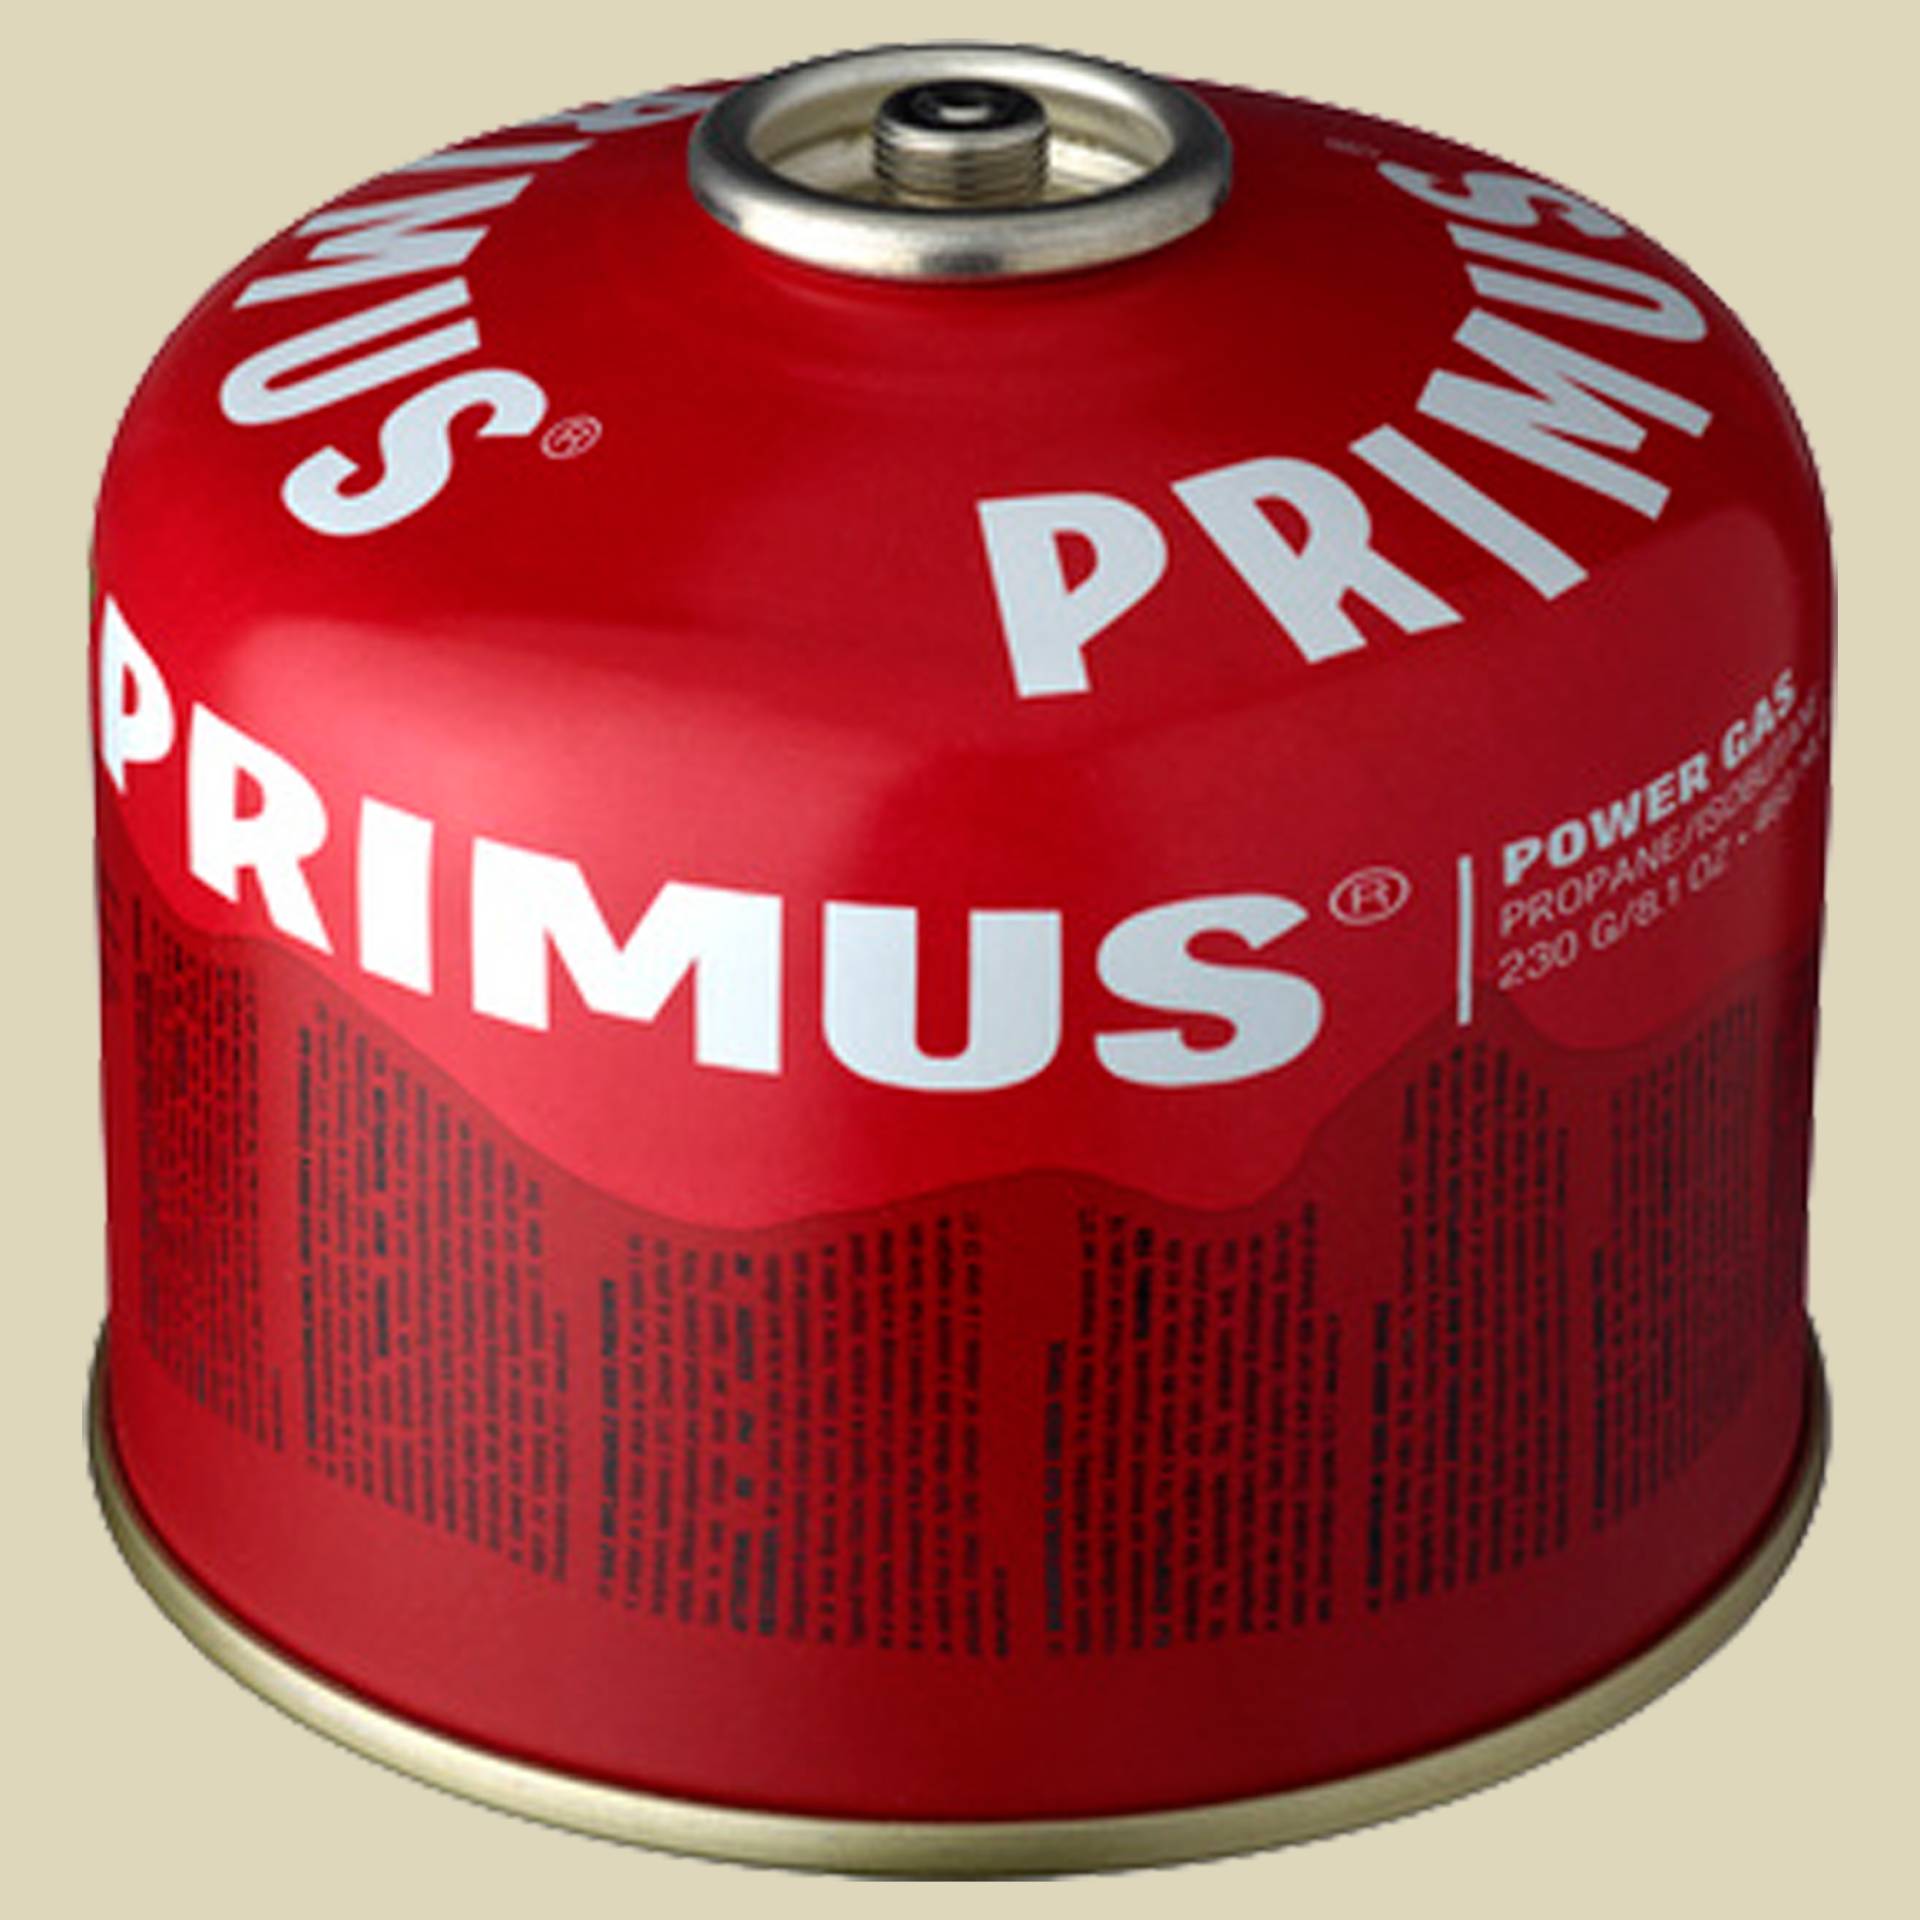 Power Gas 230g L3 von Primus